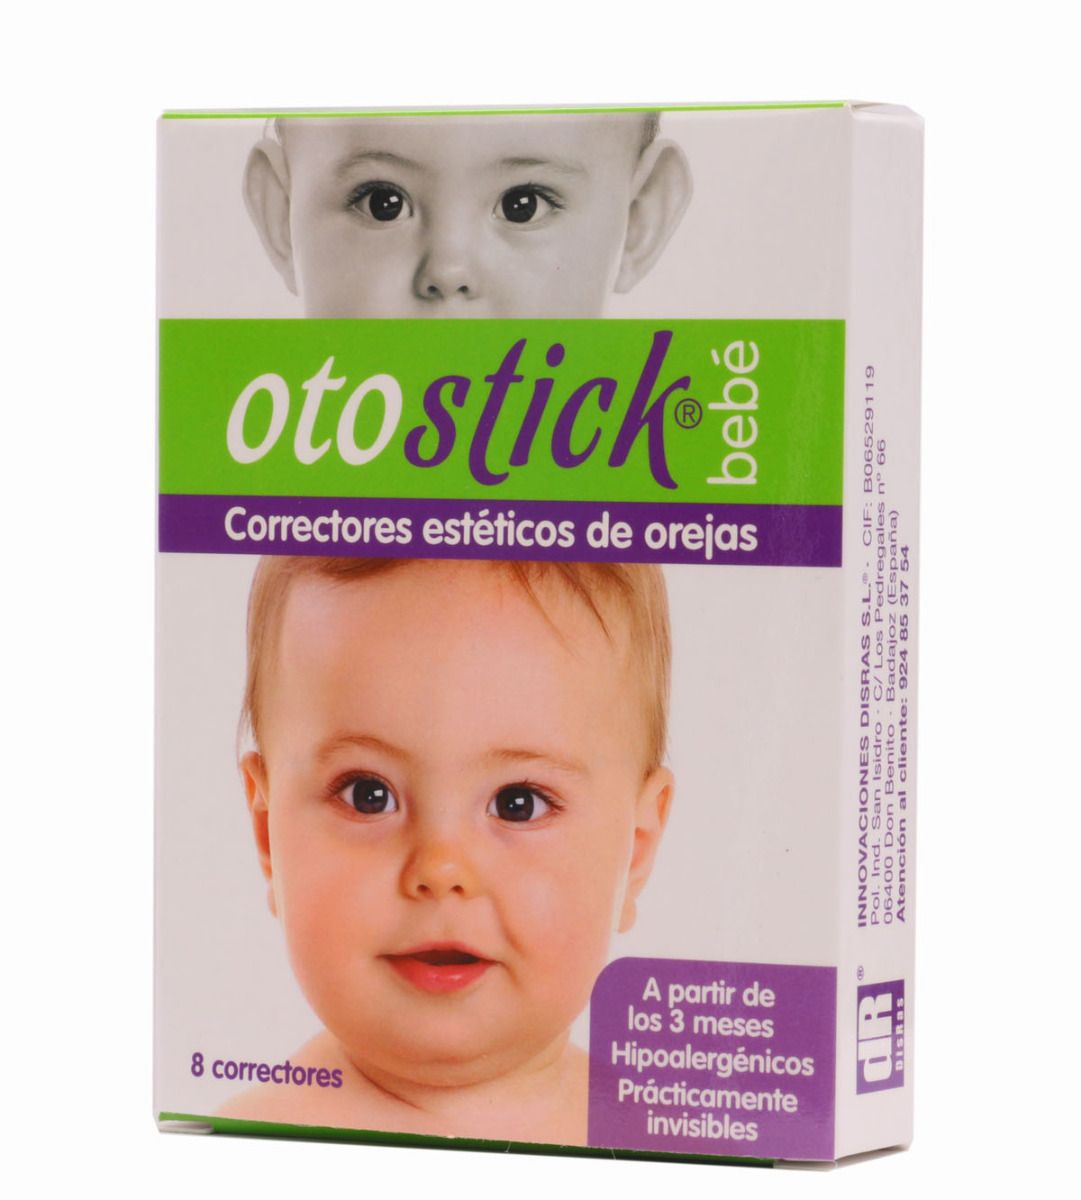 otostick - Otostick son unos correctores de silicona